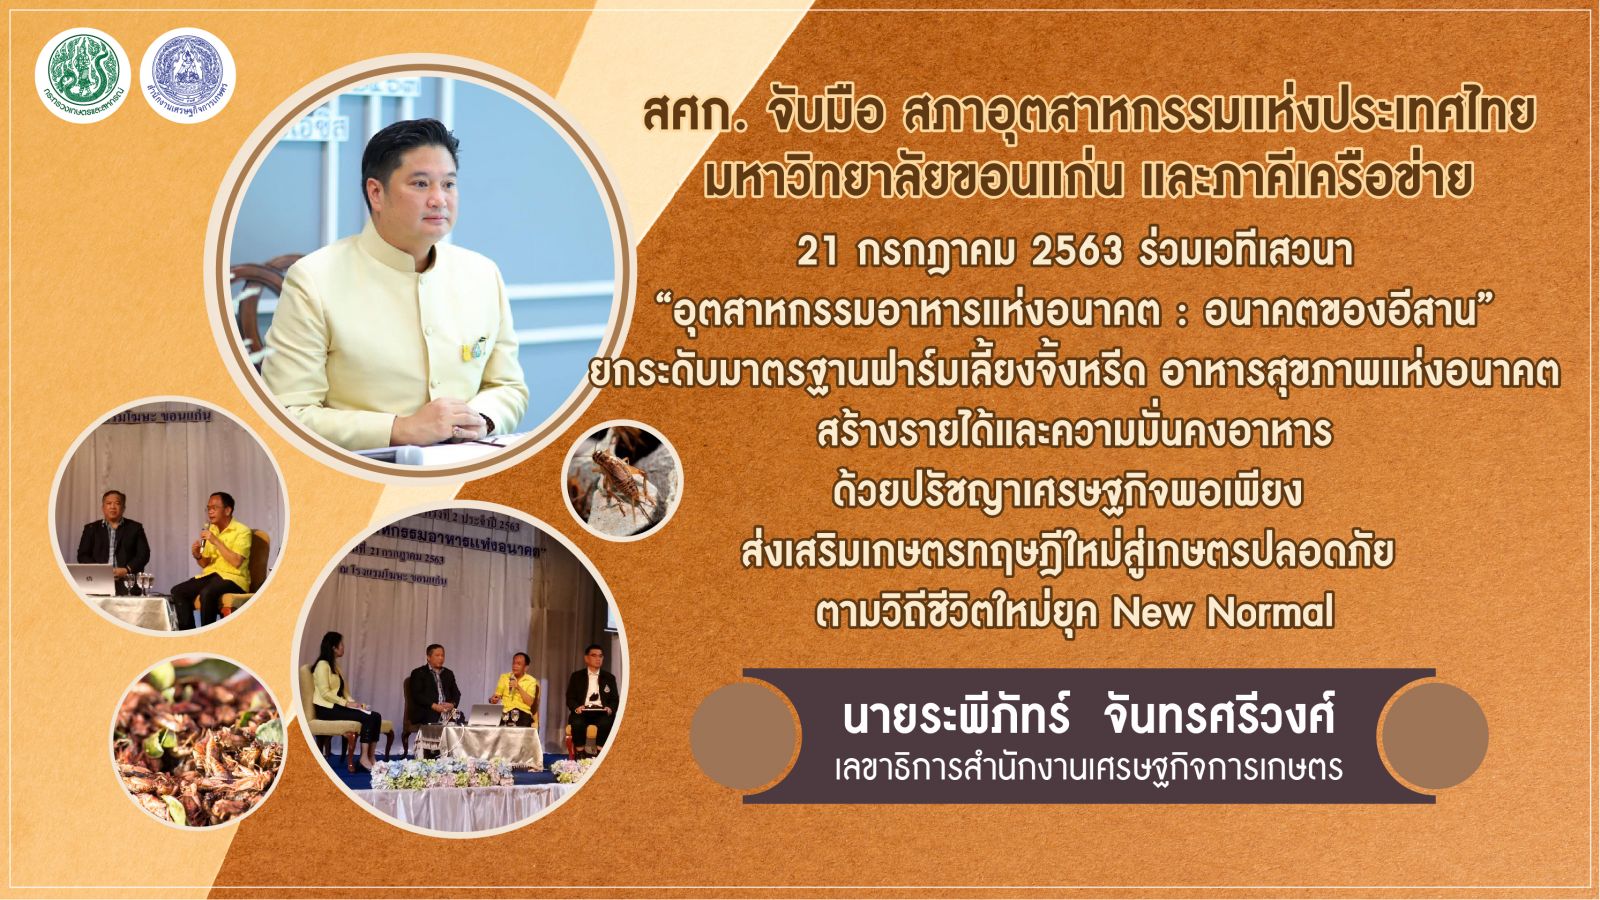 รัฐมนตรีเกษตรฯ ดันไทยสู่มหาอำนาจจิ้งหรีดโลก  สศก. โชว์ศักยภาพ เกษตรผลิตพาณิชย์ตลาด  ขับเคลื่อนอุตสาหกรรมเกษตร ด้วยศาสตร์พระราชาเพื่อการพัฒนาที่ยั่งยืน